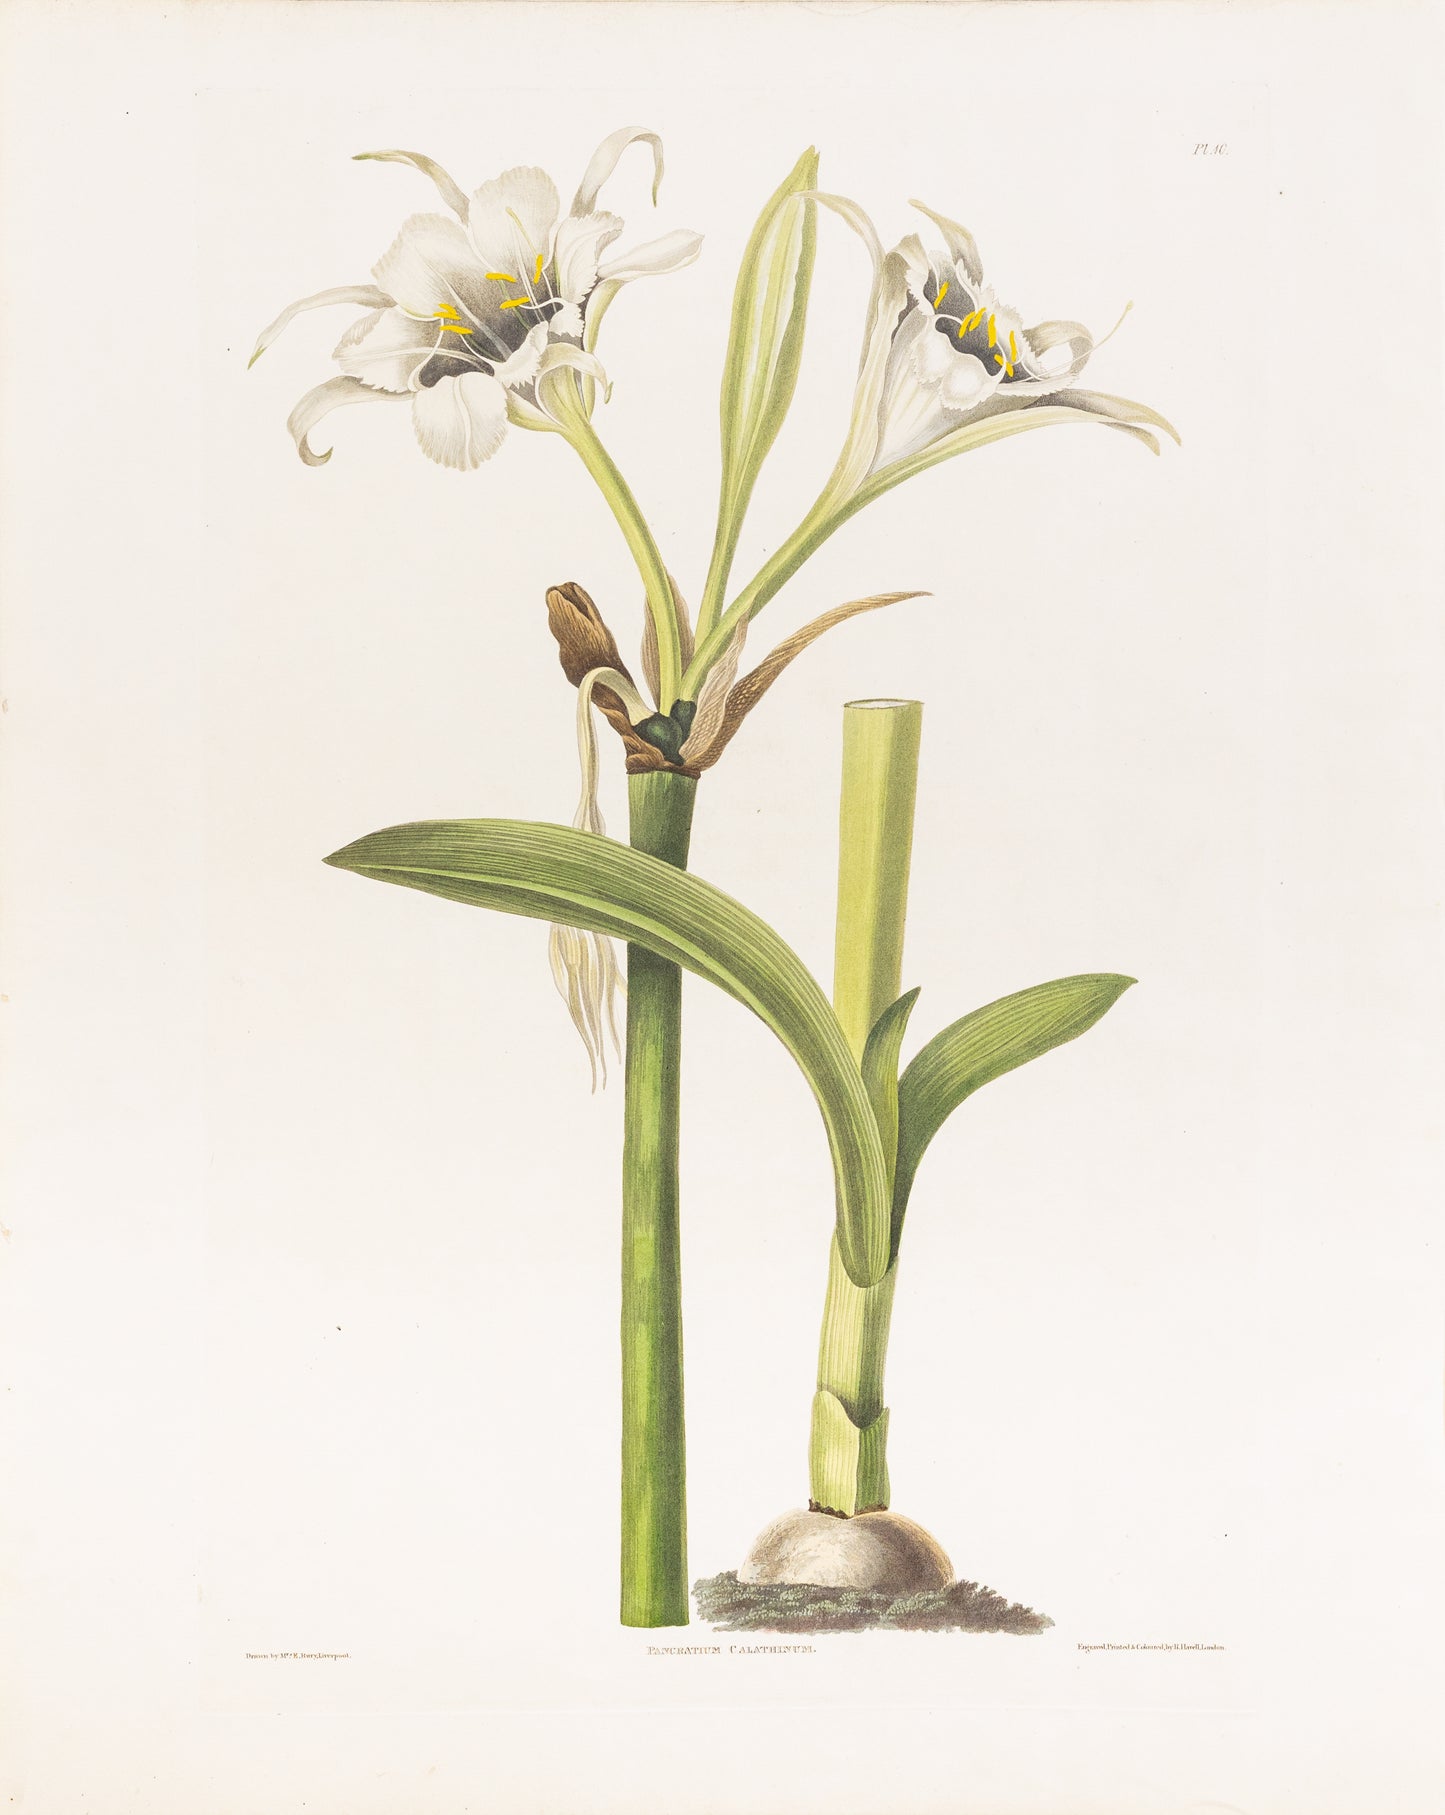 Falkner Bury, Priscilla Susan. Pancratum Calathinum, Plate 10. London, 1831-34.